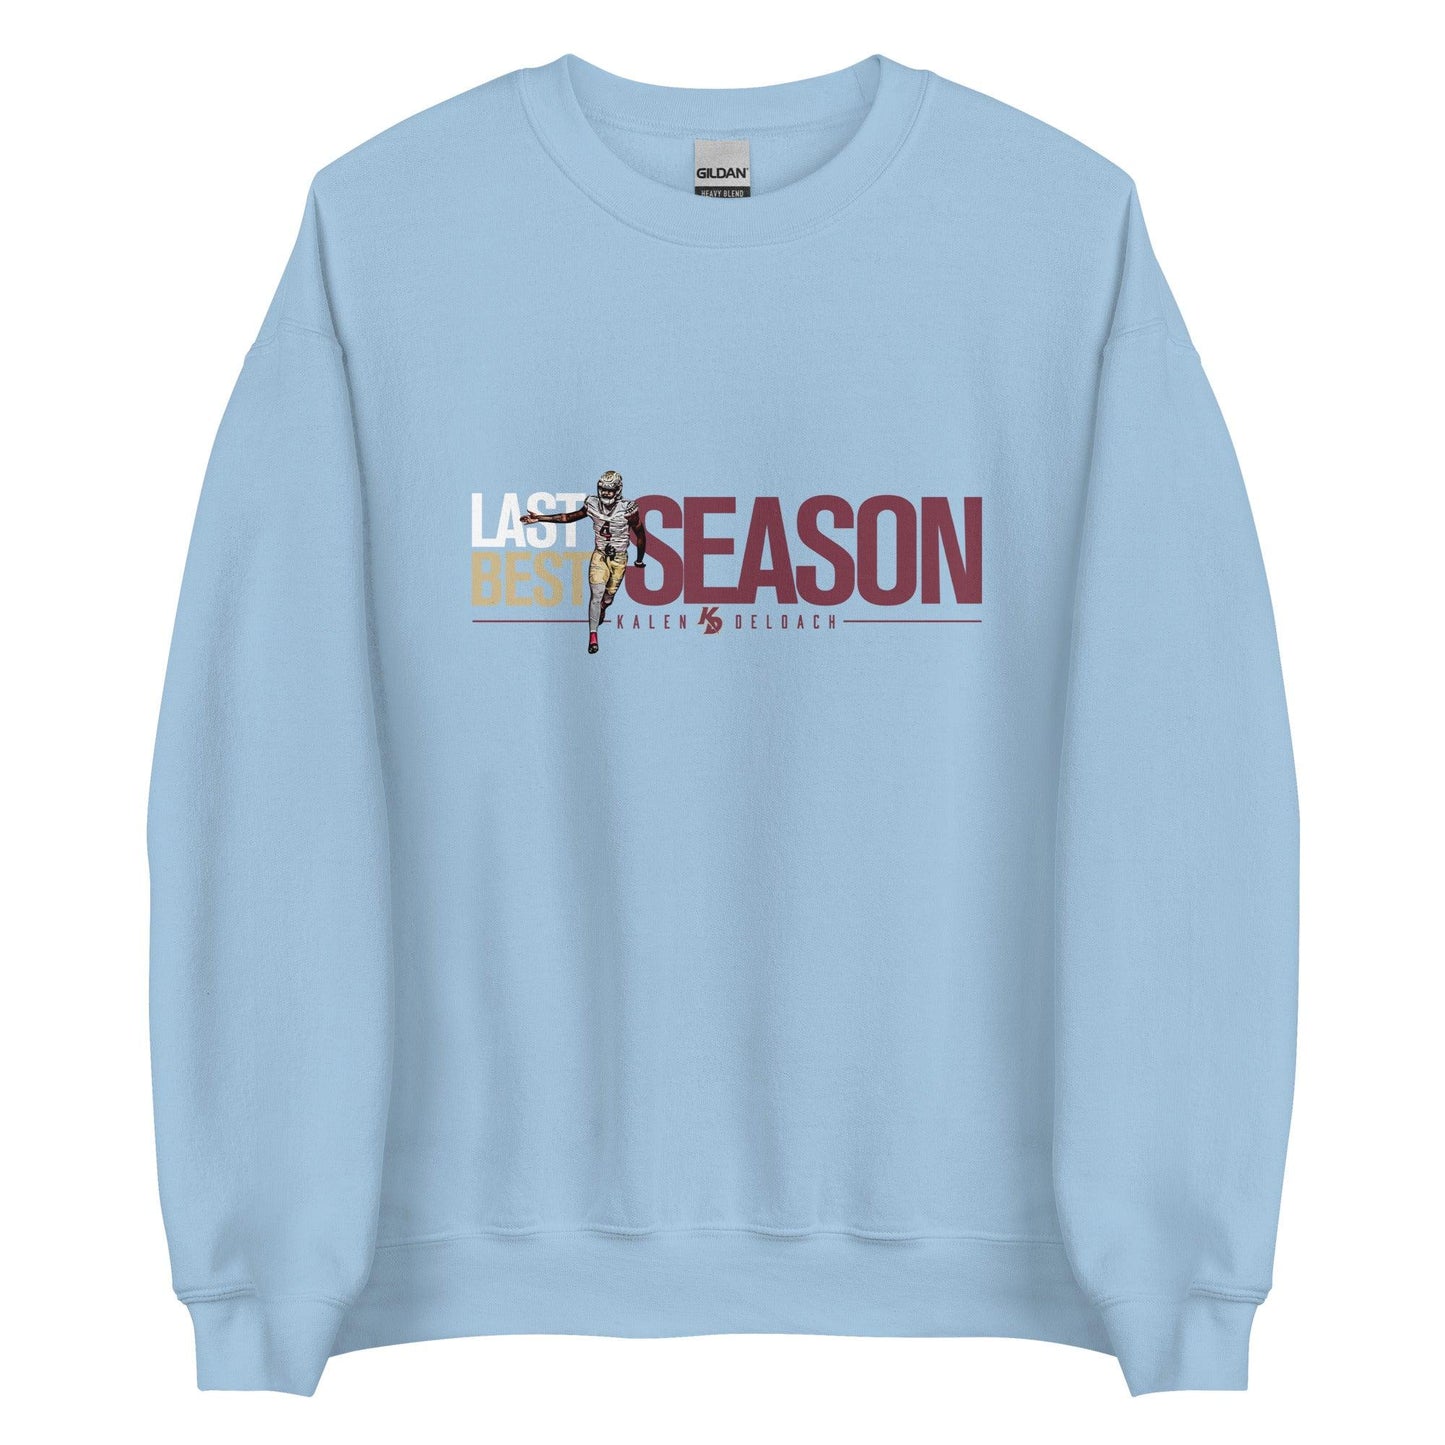 Kalen Deloach "Last Season Best Season" Sweatshirt - Fan Arch